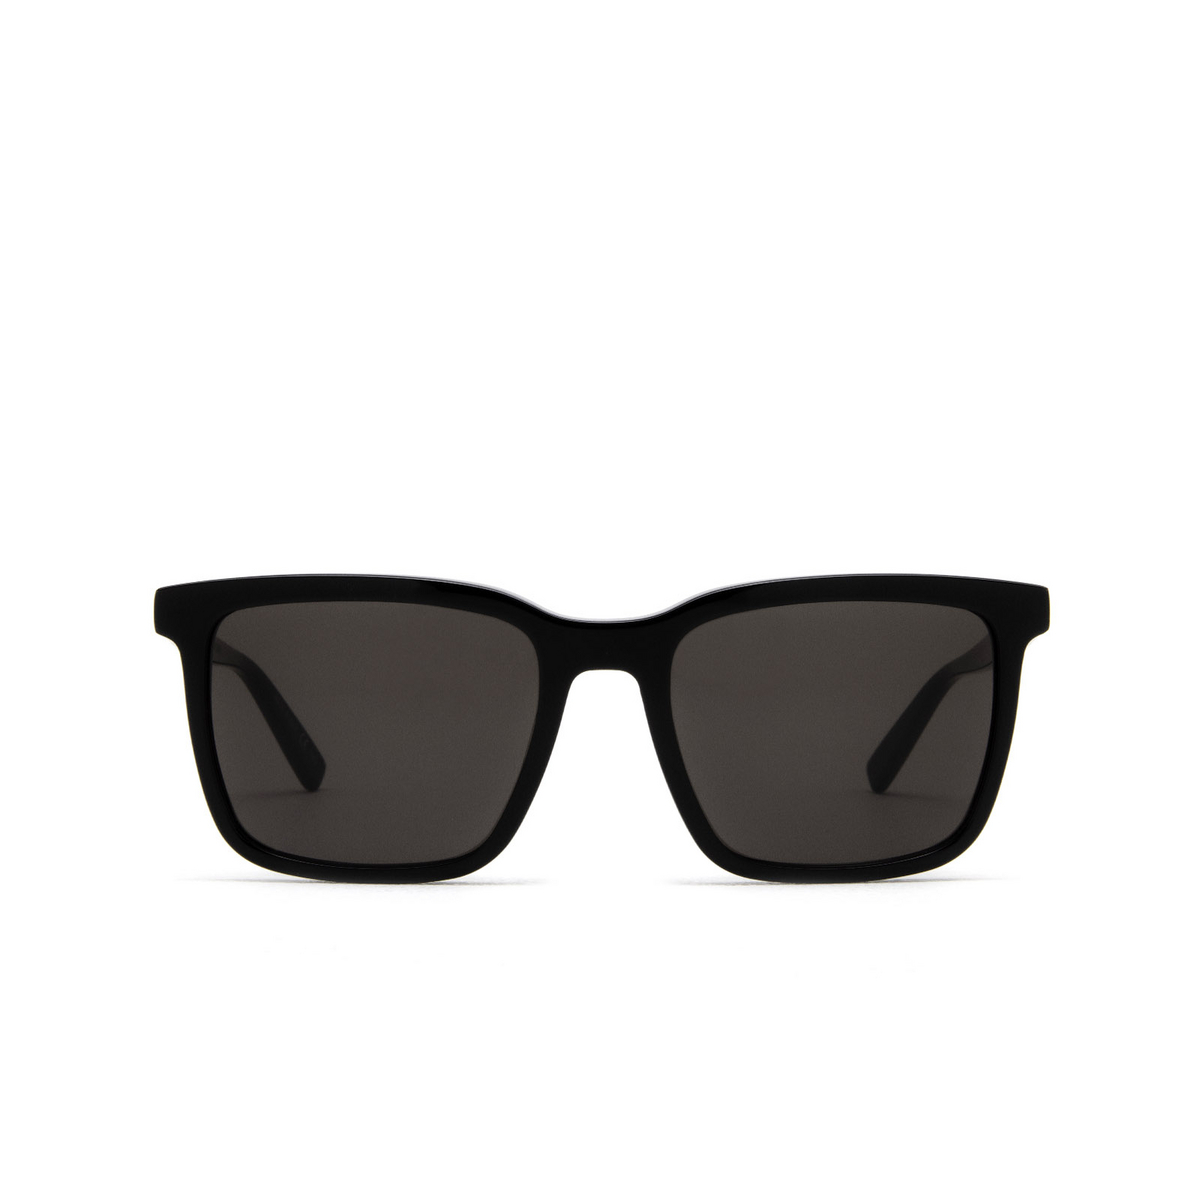 Saint Laurent® Square Sunglasses: SL 500 color Black 001 - front view.